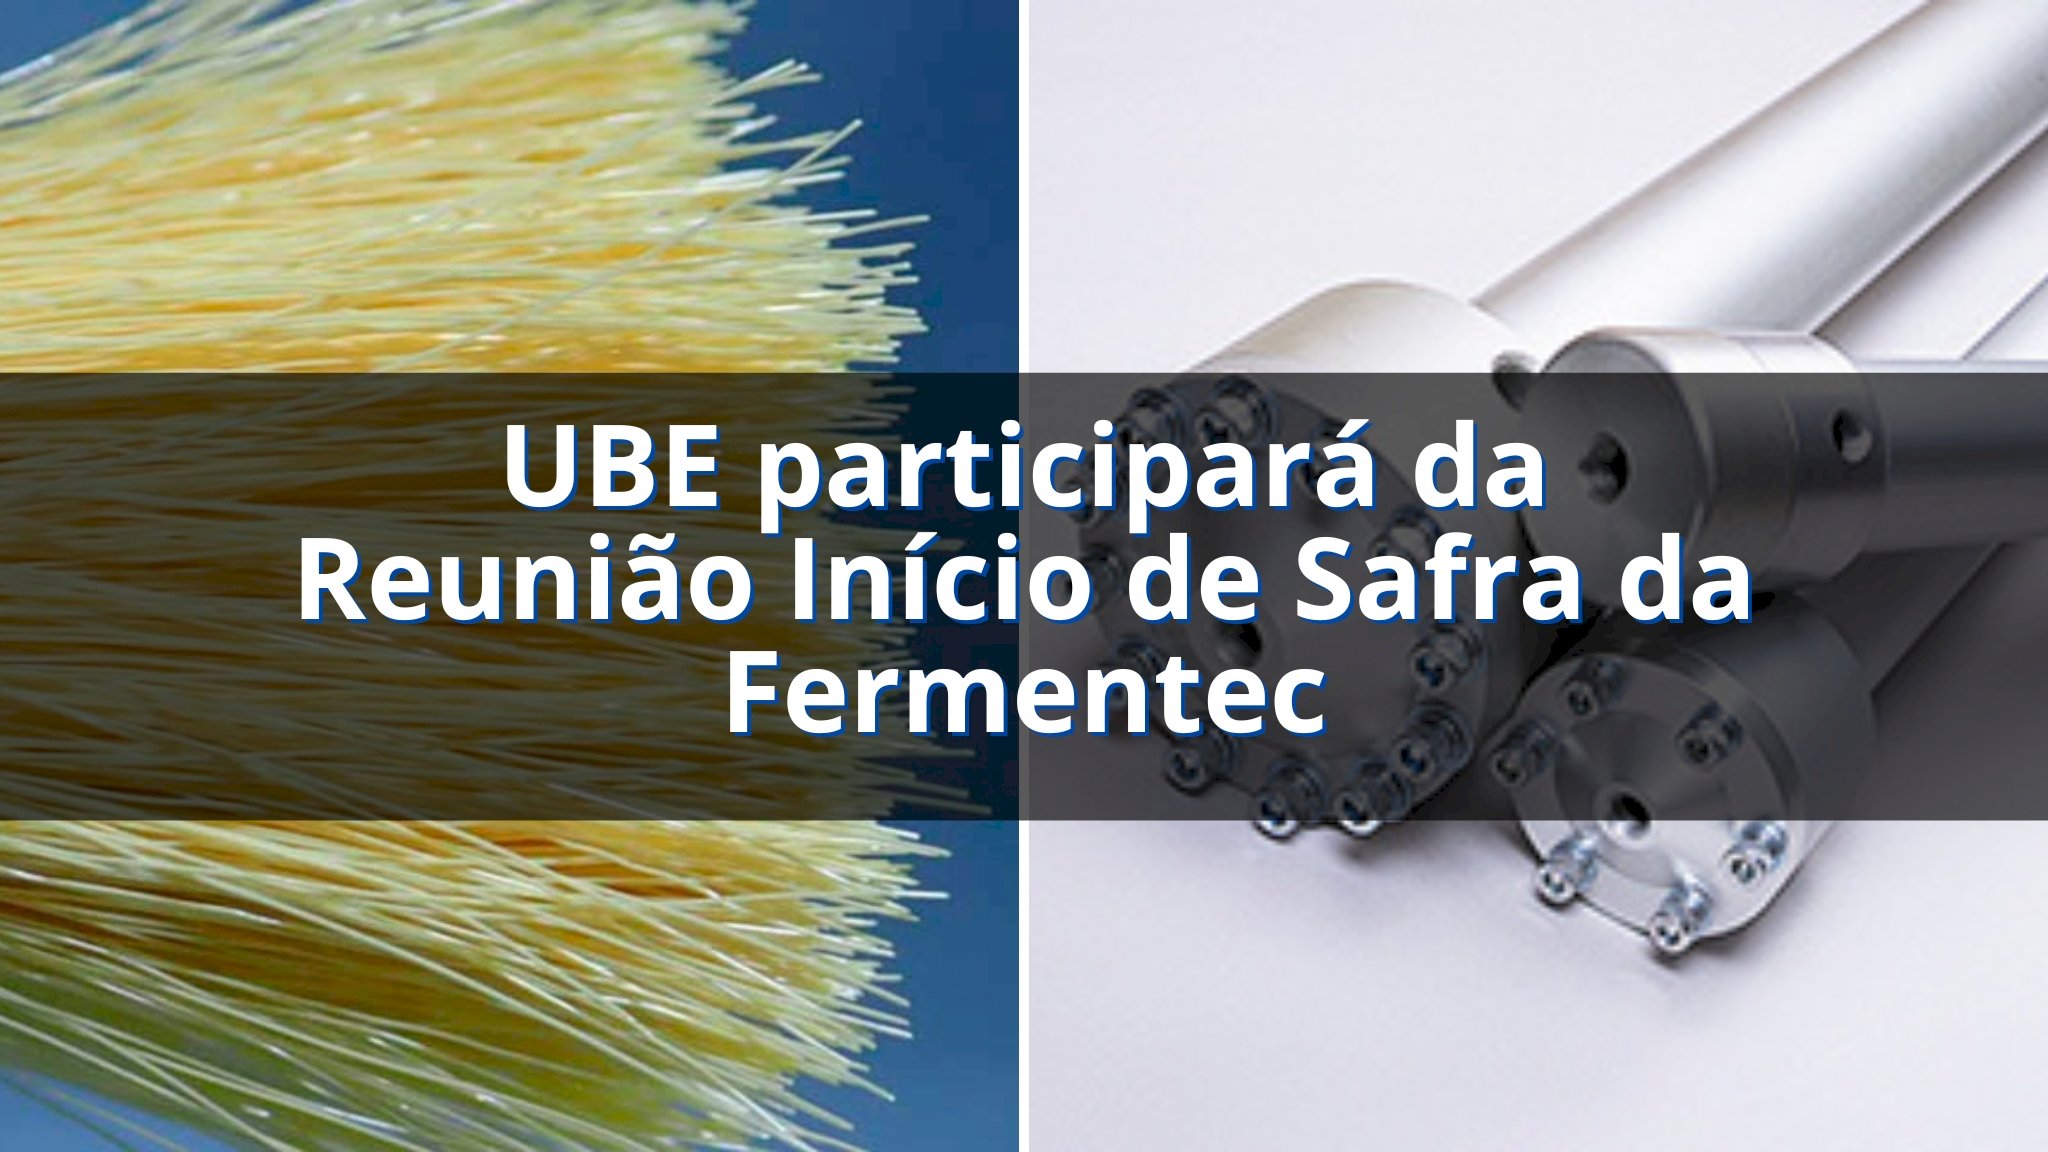 UBE participará da Reunião Início de Safra da Fermentec